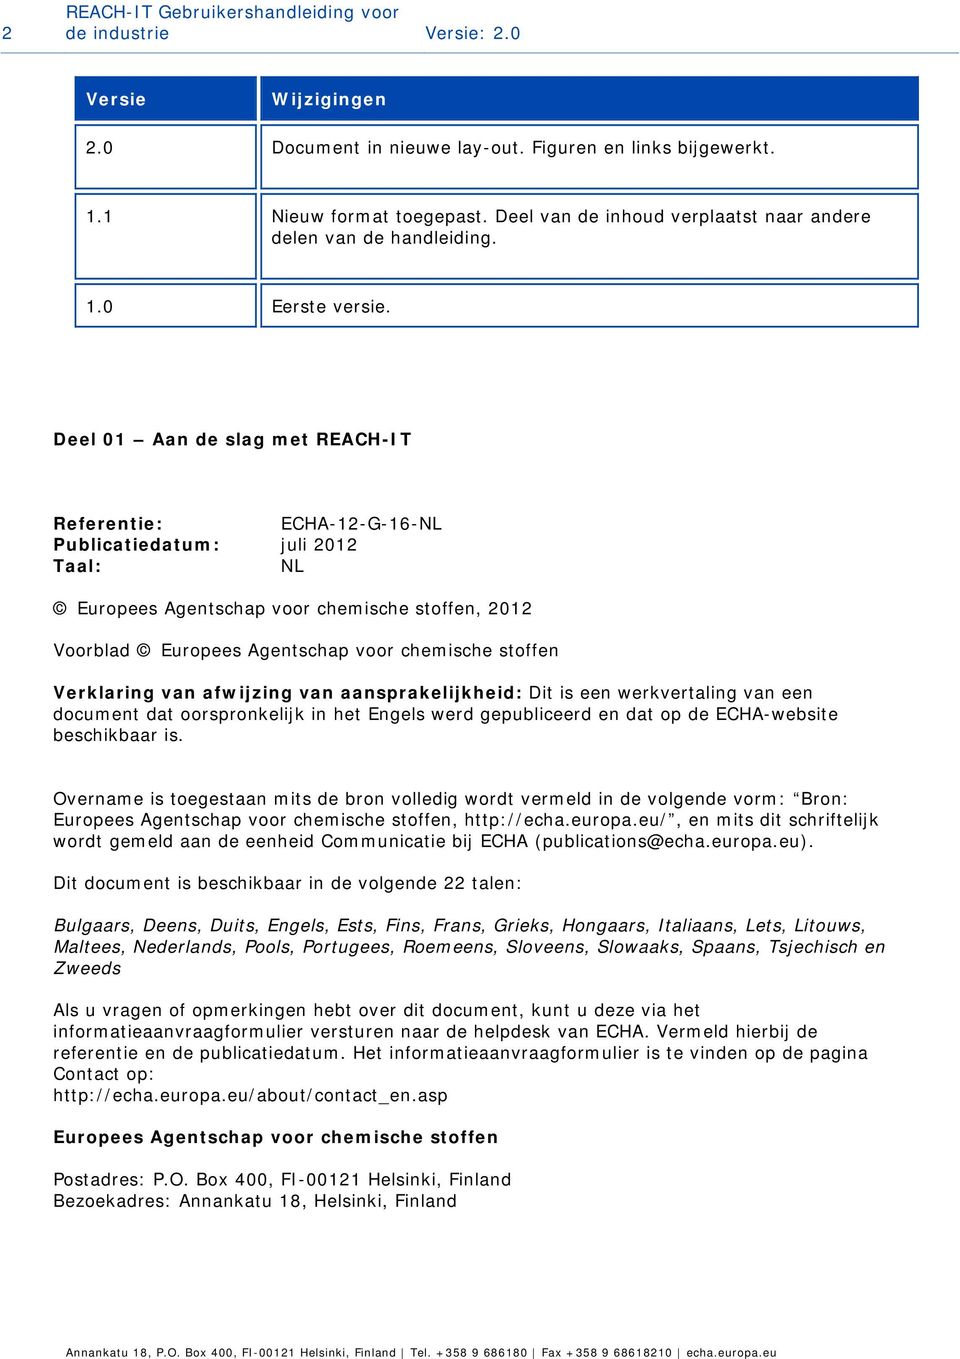 Deel 01 Aan de slag met REACH-IT Referentie: ECHA-12-G-16-NL Publicatiedatum: juli 2012 Taal: NL Europees Agentschap voor chemische stoffen, 2012 Voorblad Europees Agentschap voor chemische stoffen